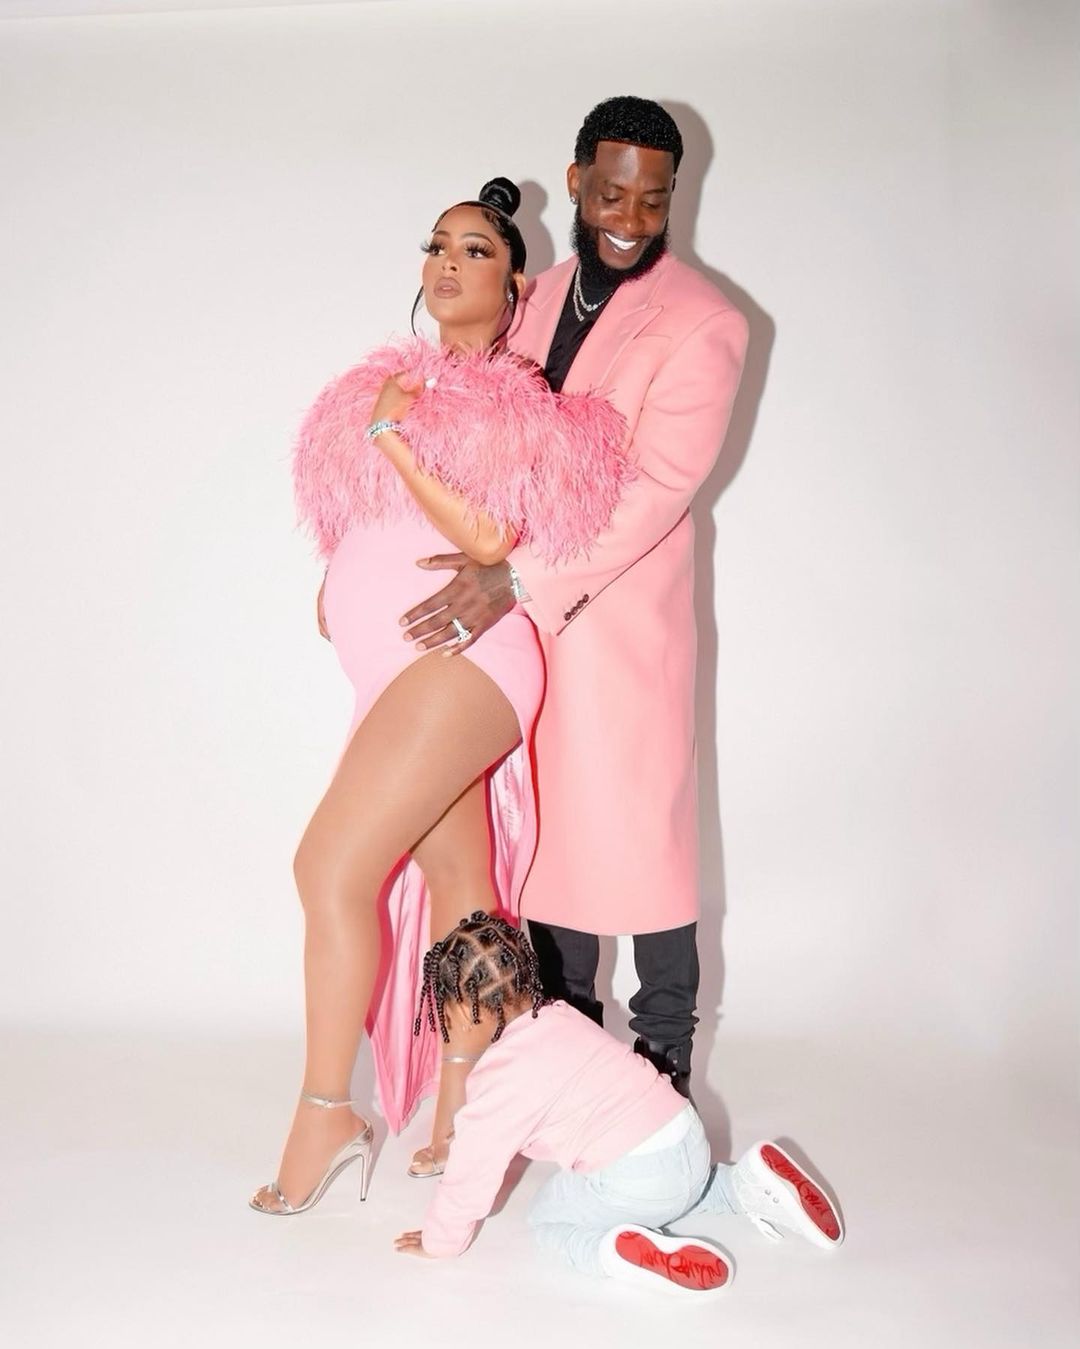 Gucci Mane and Keyshia Ka’oir